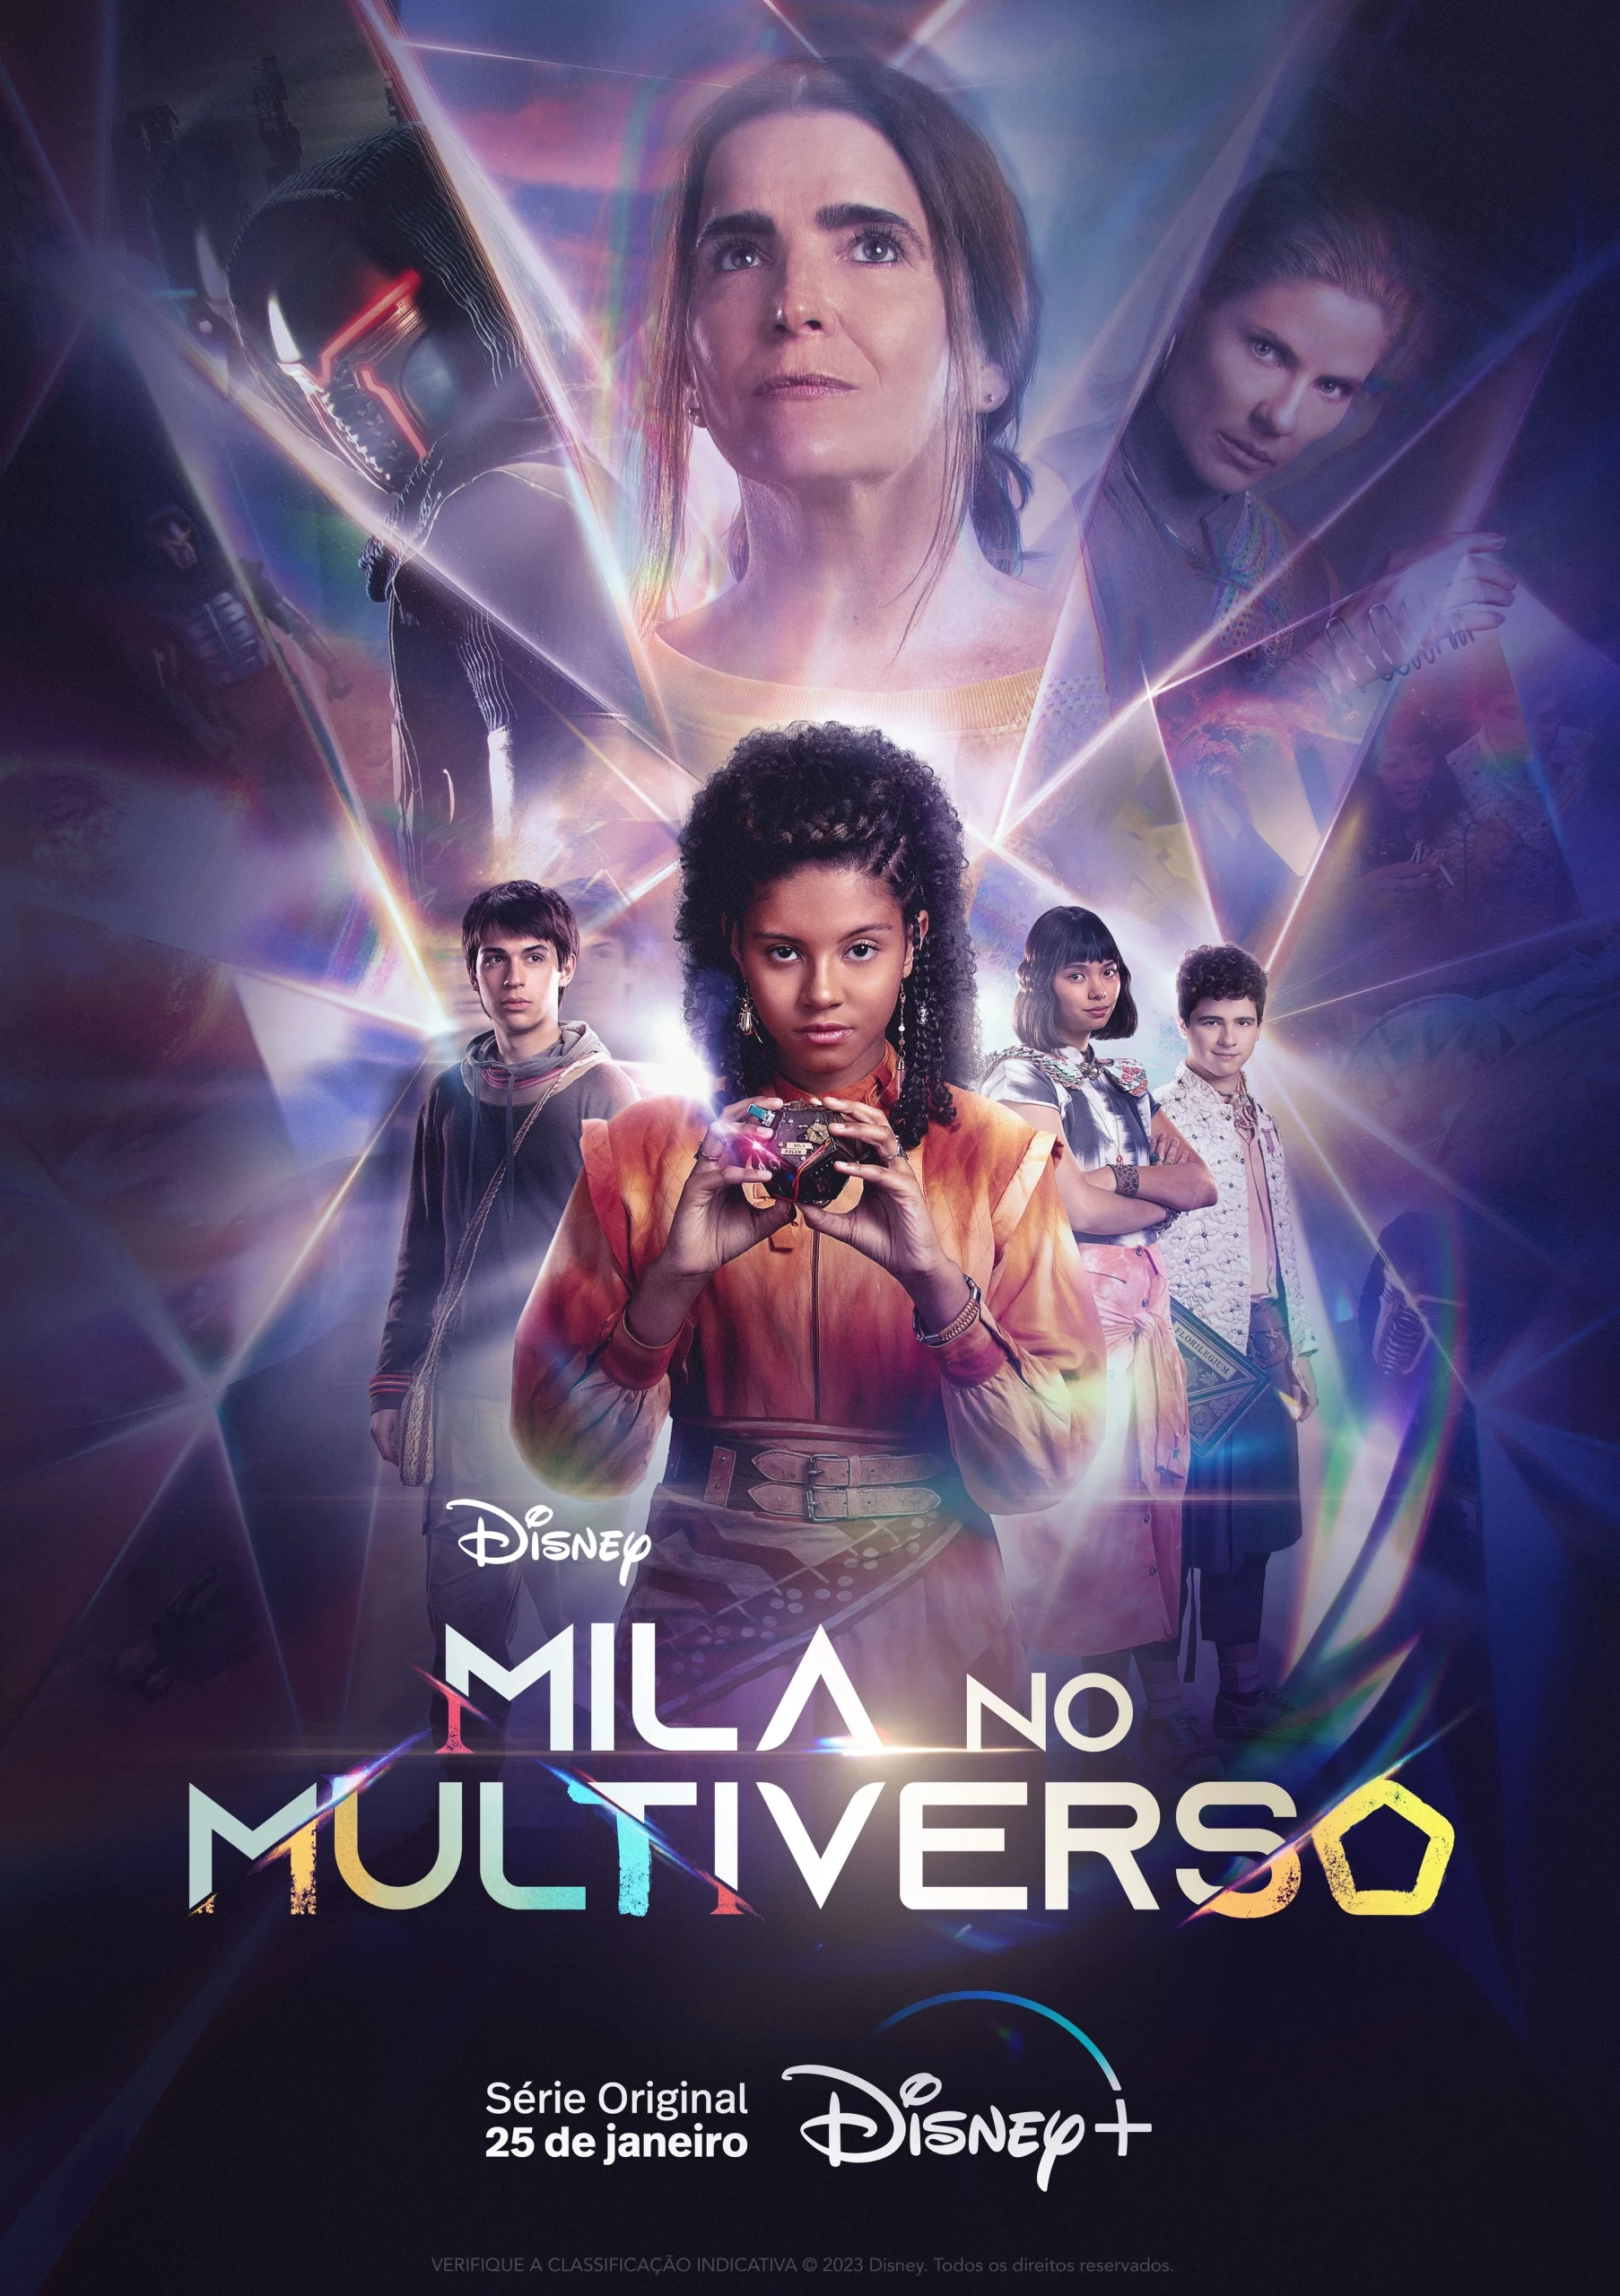 Mila no Multiverso parceria de sucesso com a cinefilm*